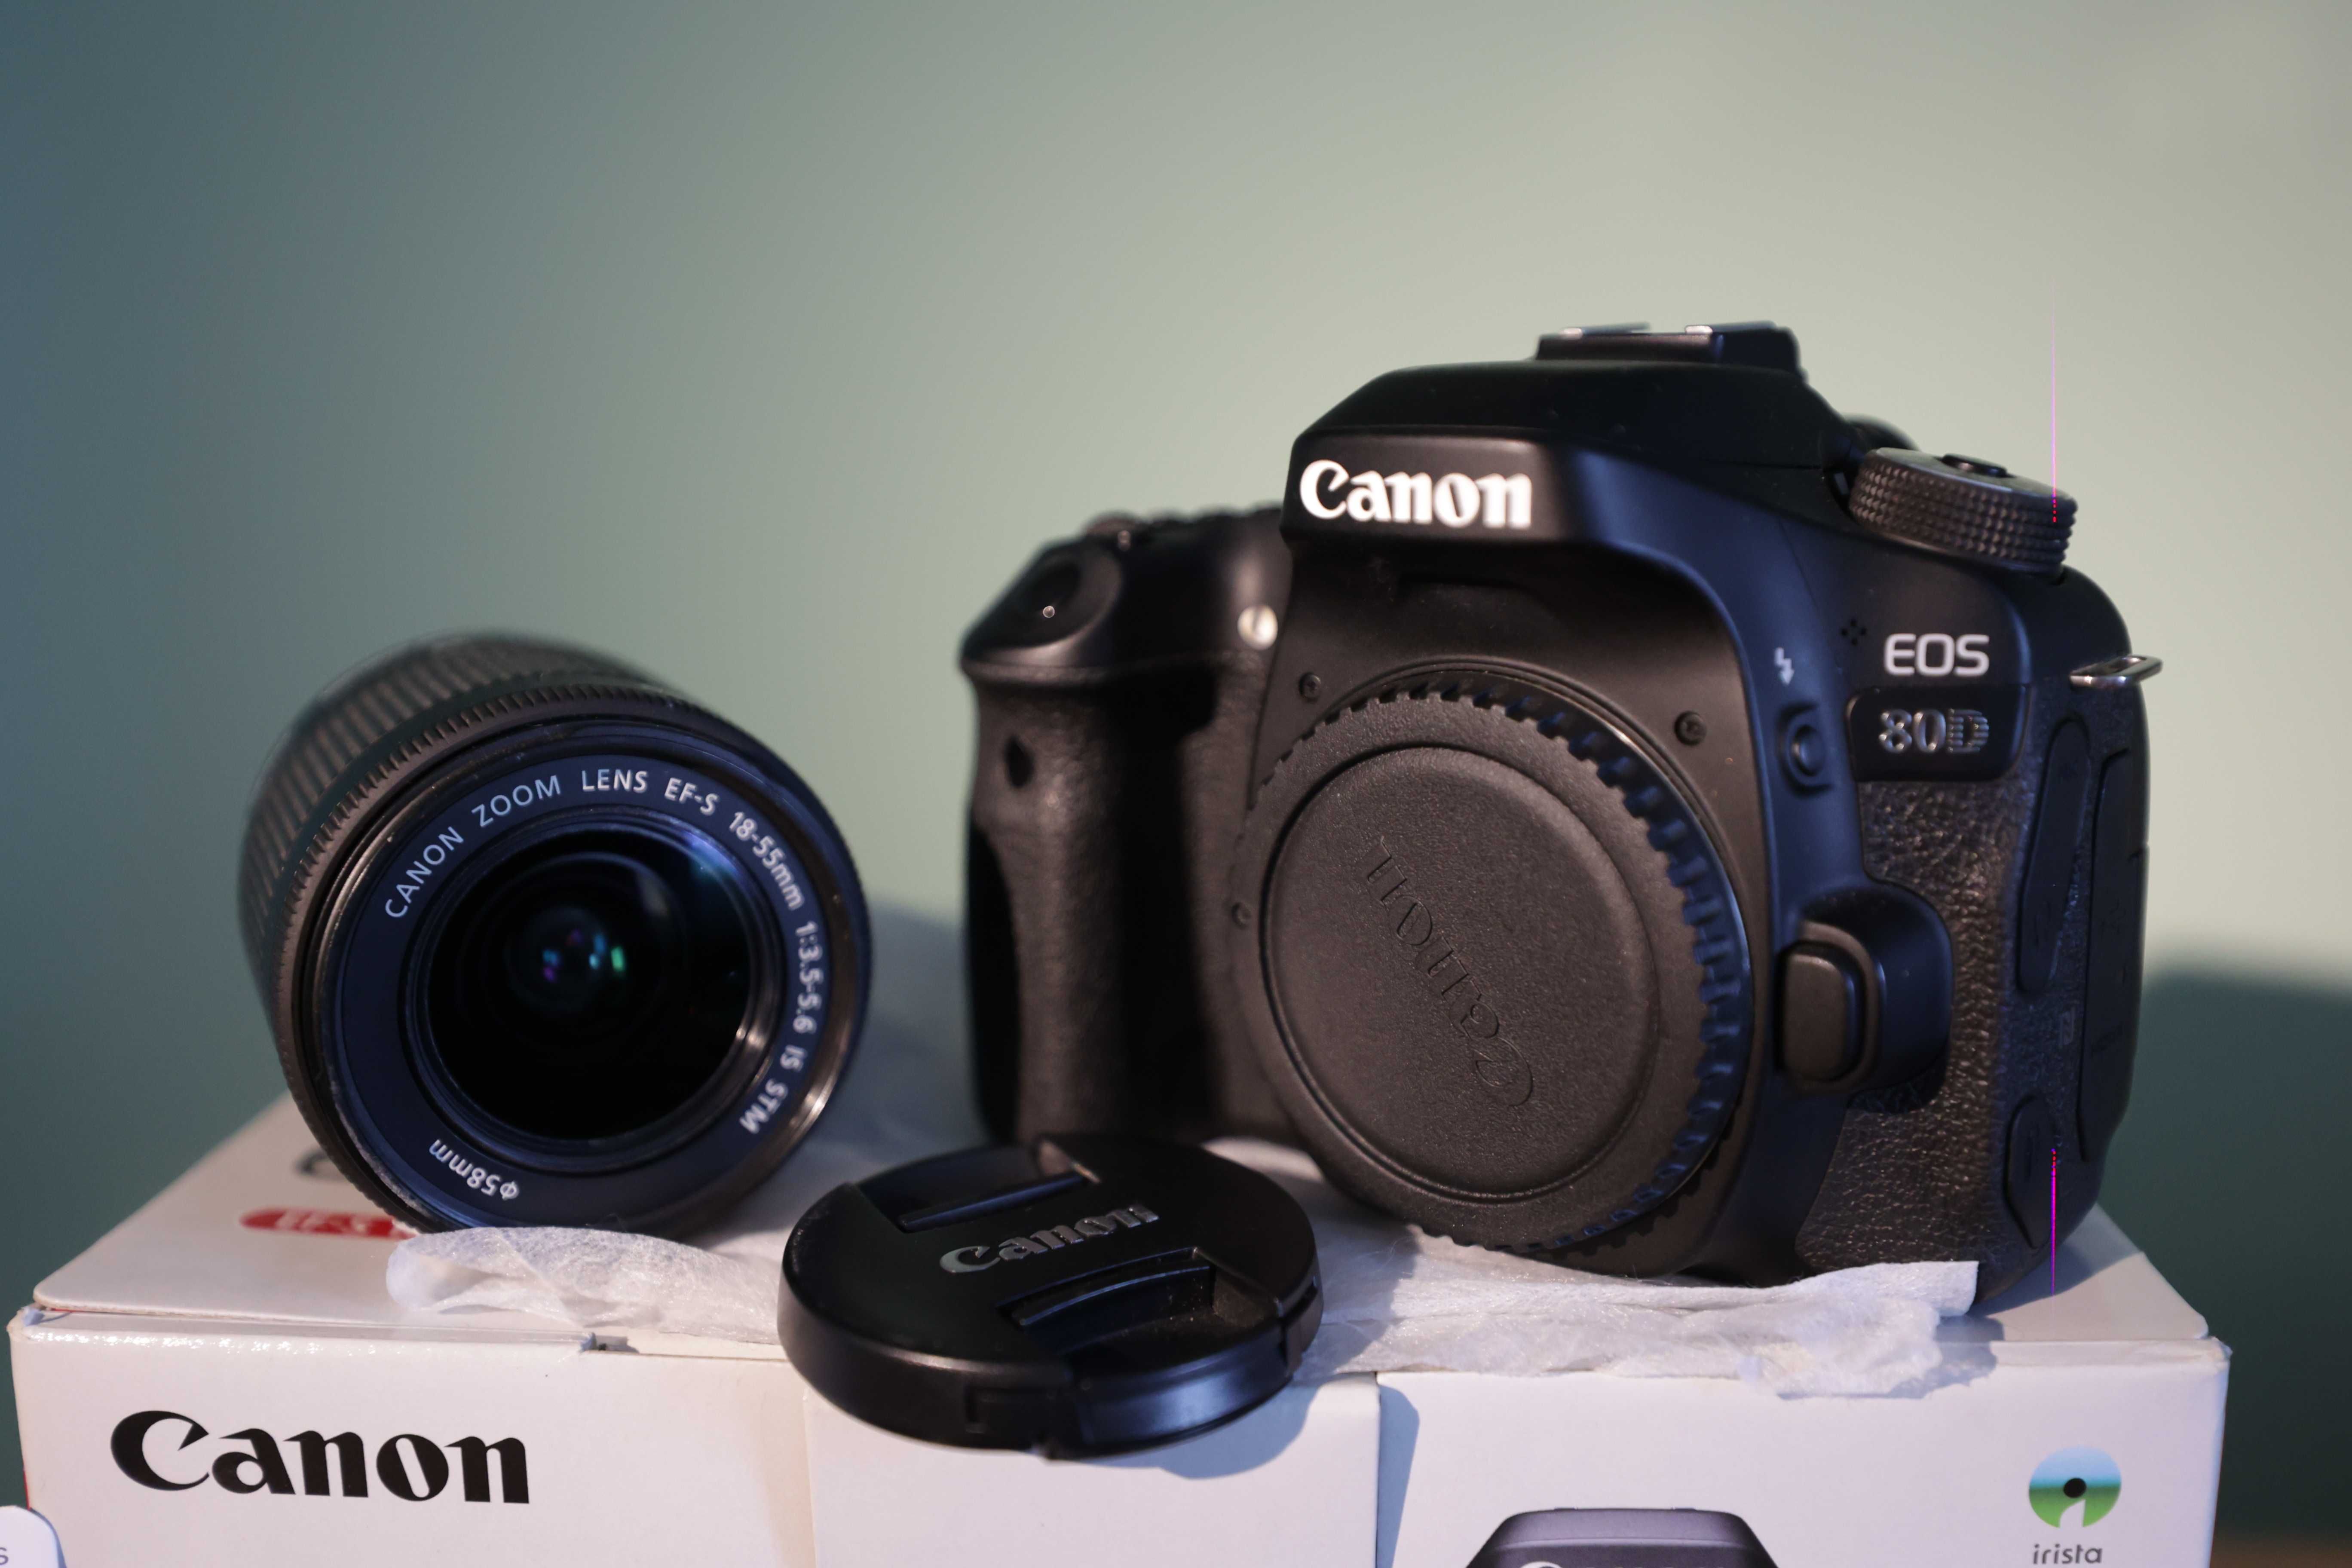 Canon EOS 80 D, kit EFS 18-55 mm (як новий, у коробці з документами)